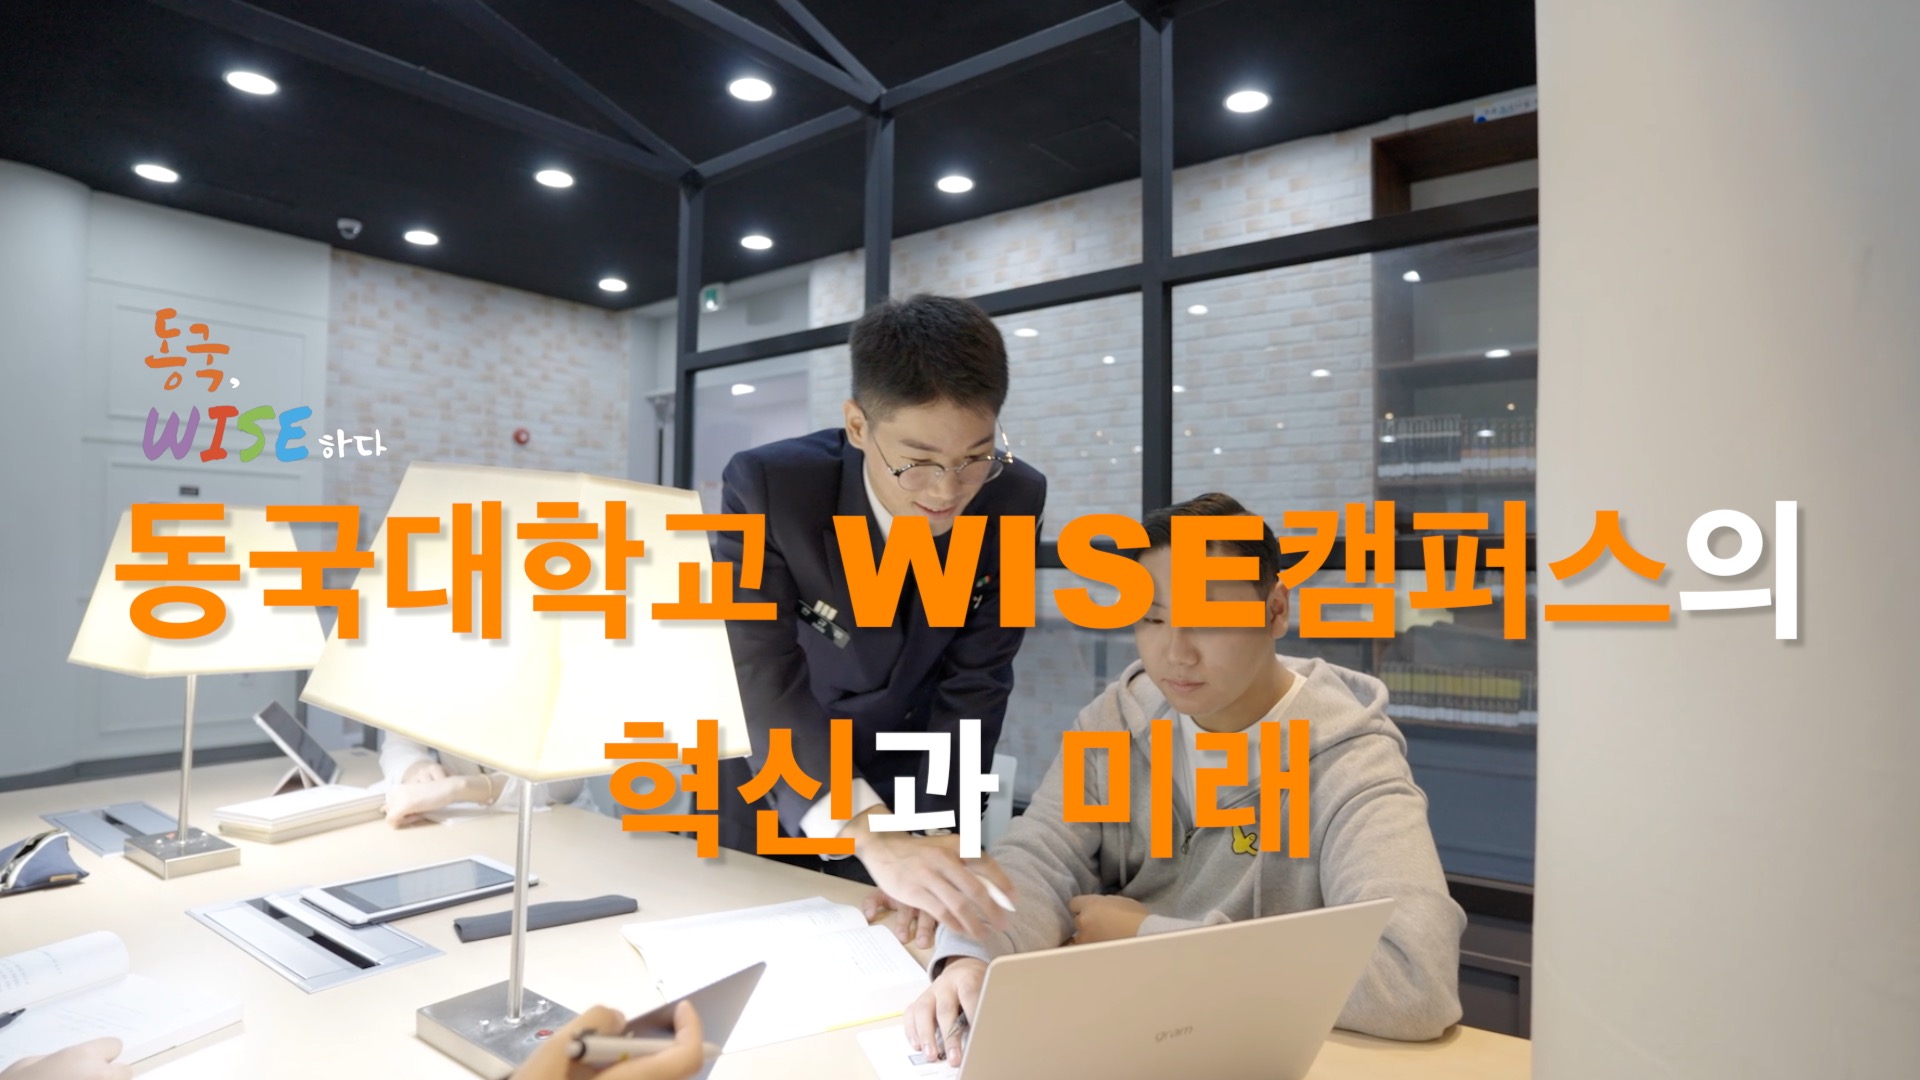 동국대학교 WISE캠퍼스의 혁신과 미래